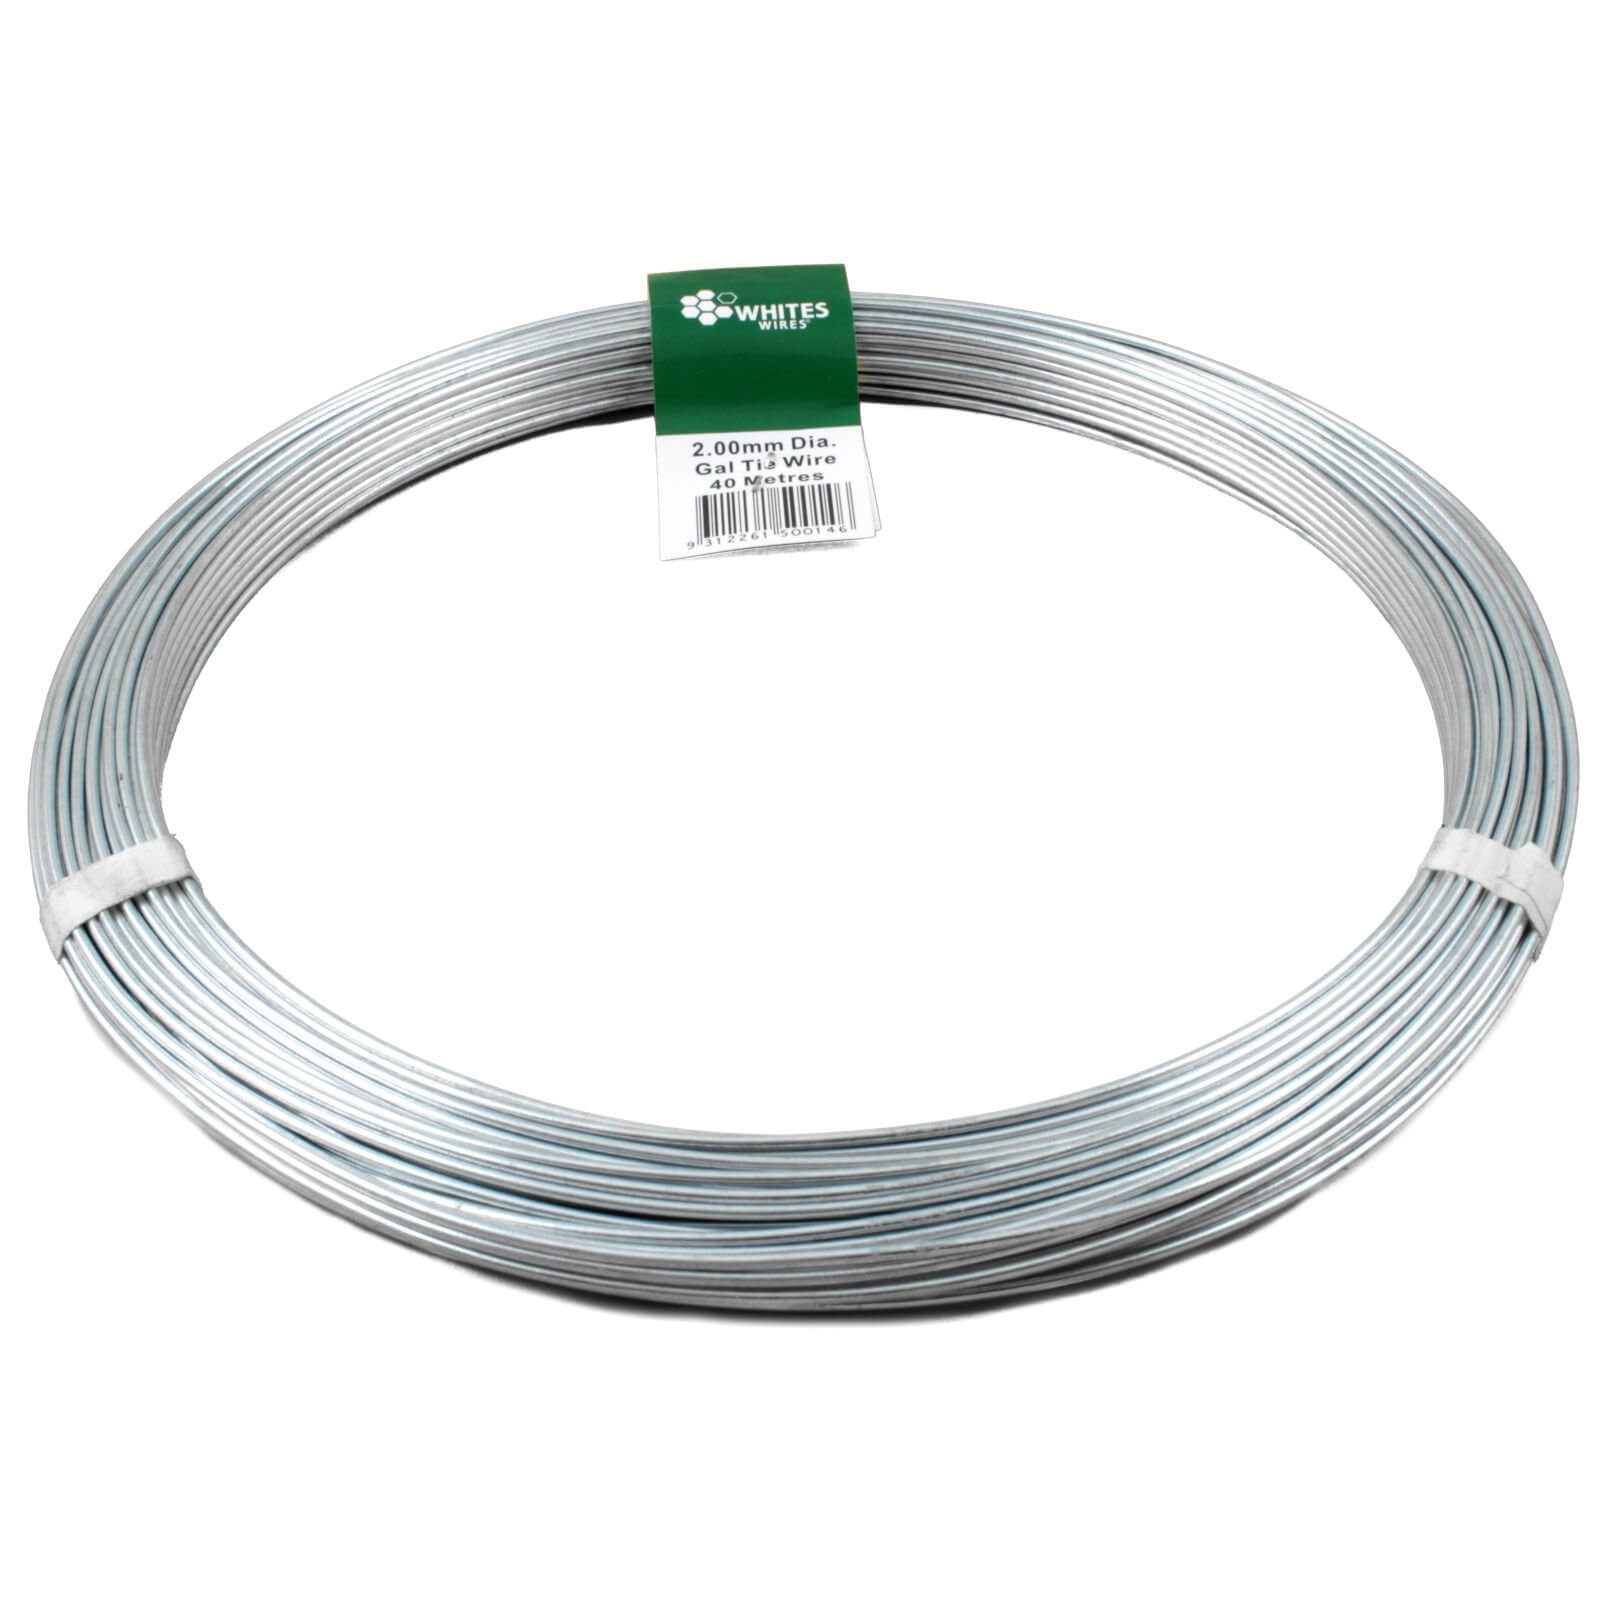 Photo of Whites Steel Tie Wire - 2mm X 40m